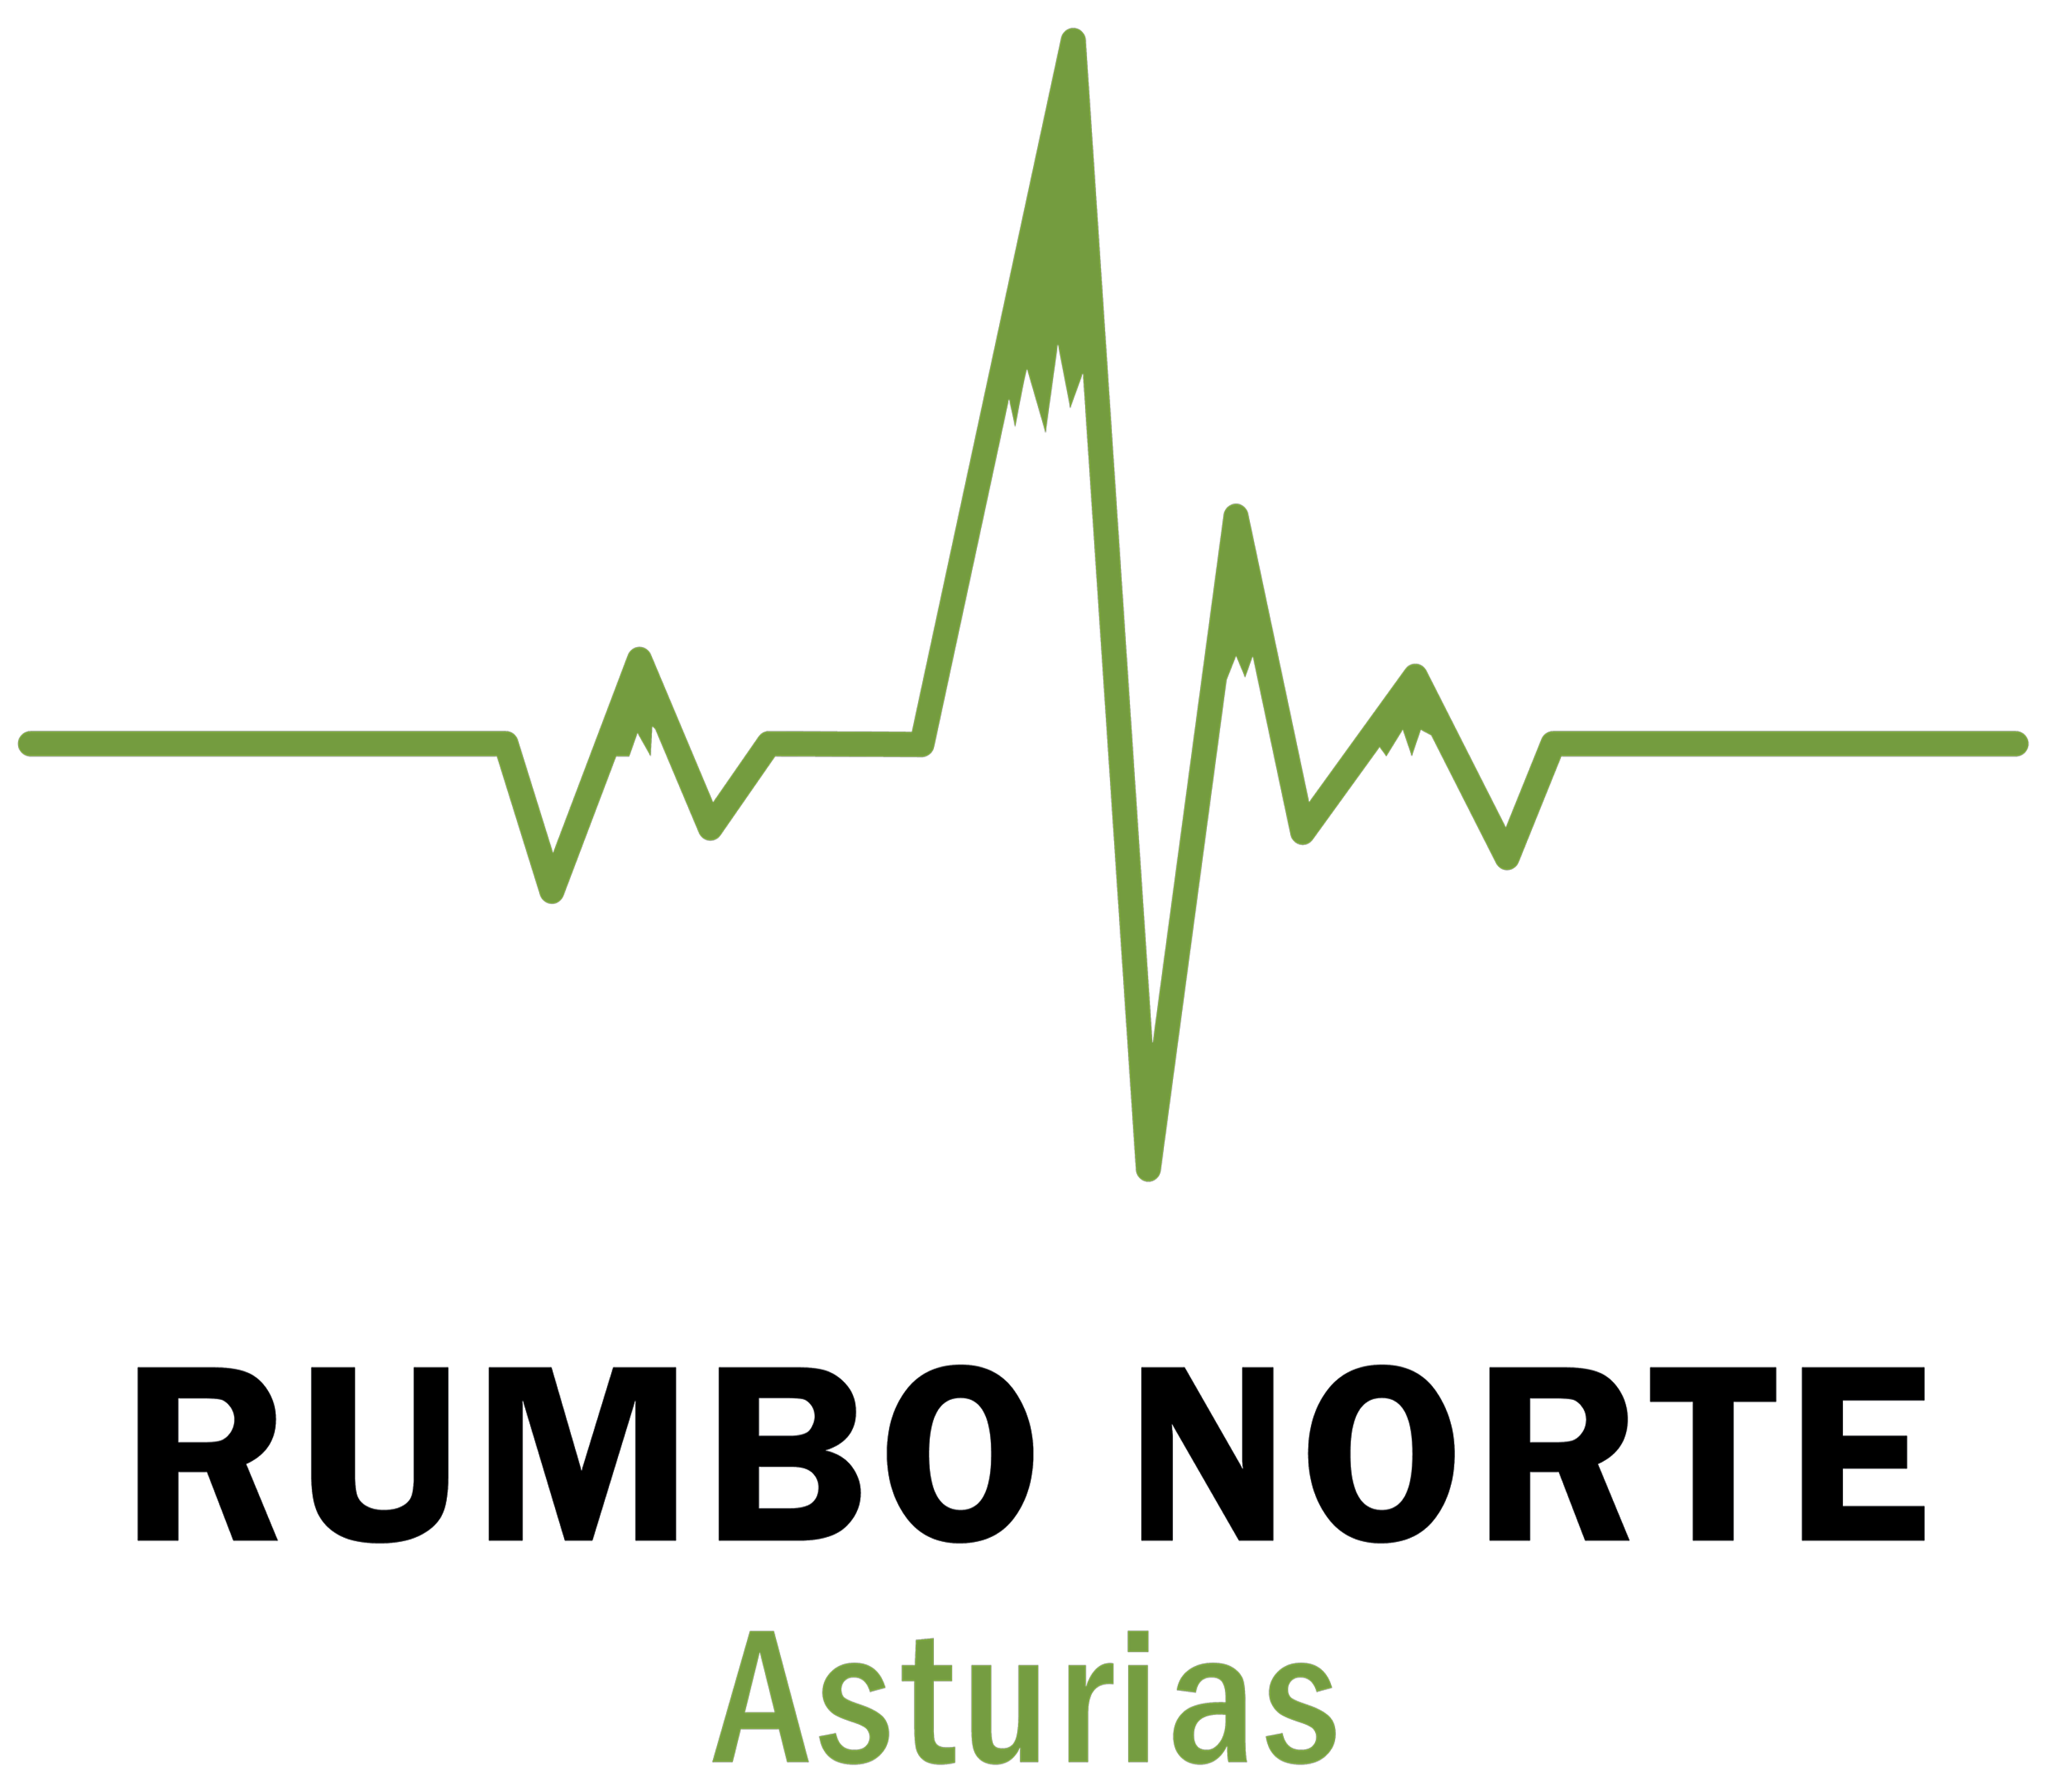 Rumbo Norte Asturias – Logo